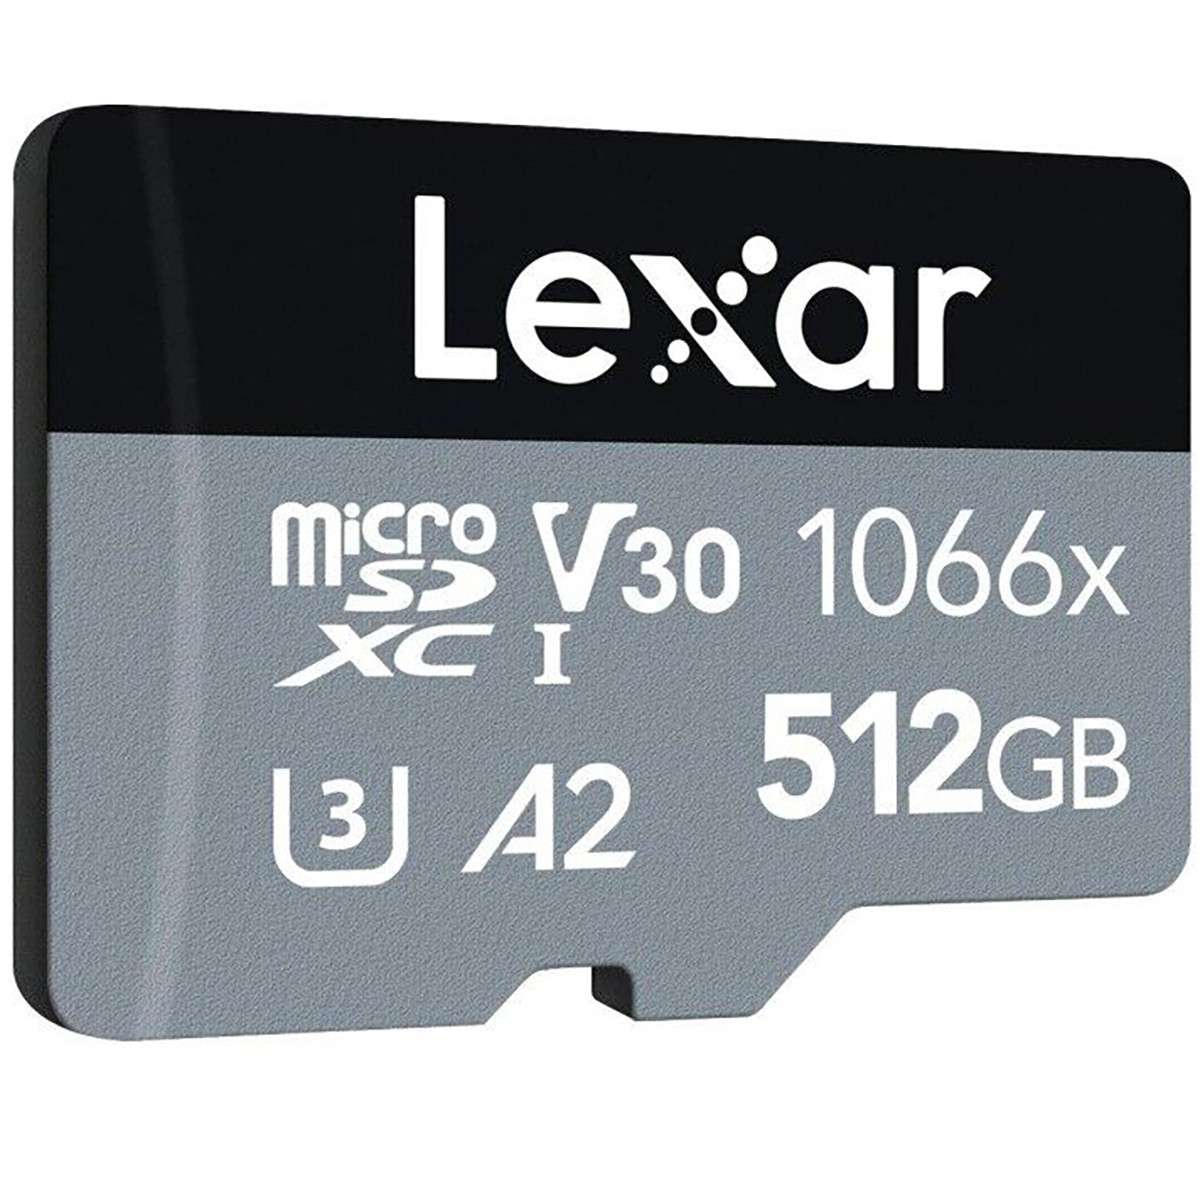 THẺ NHỚ MICROSDXC 512GB LEXAR 1066X SILVER SERIES 160MB/S (LMS1066512G-BNANG) UHS-I, U3, V30, A2